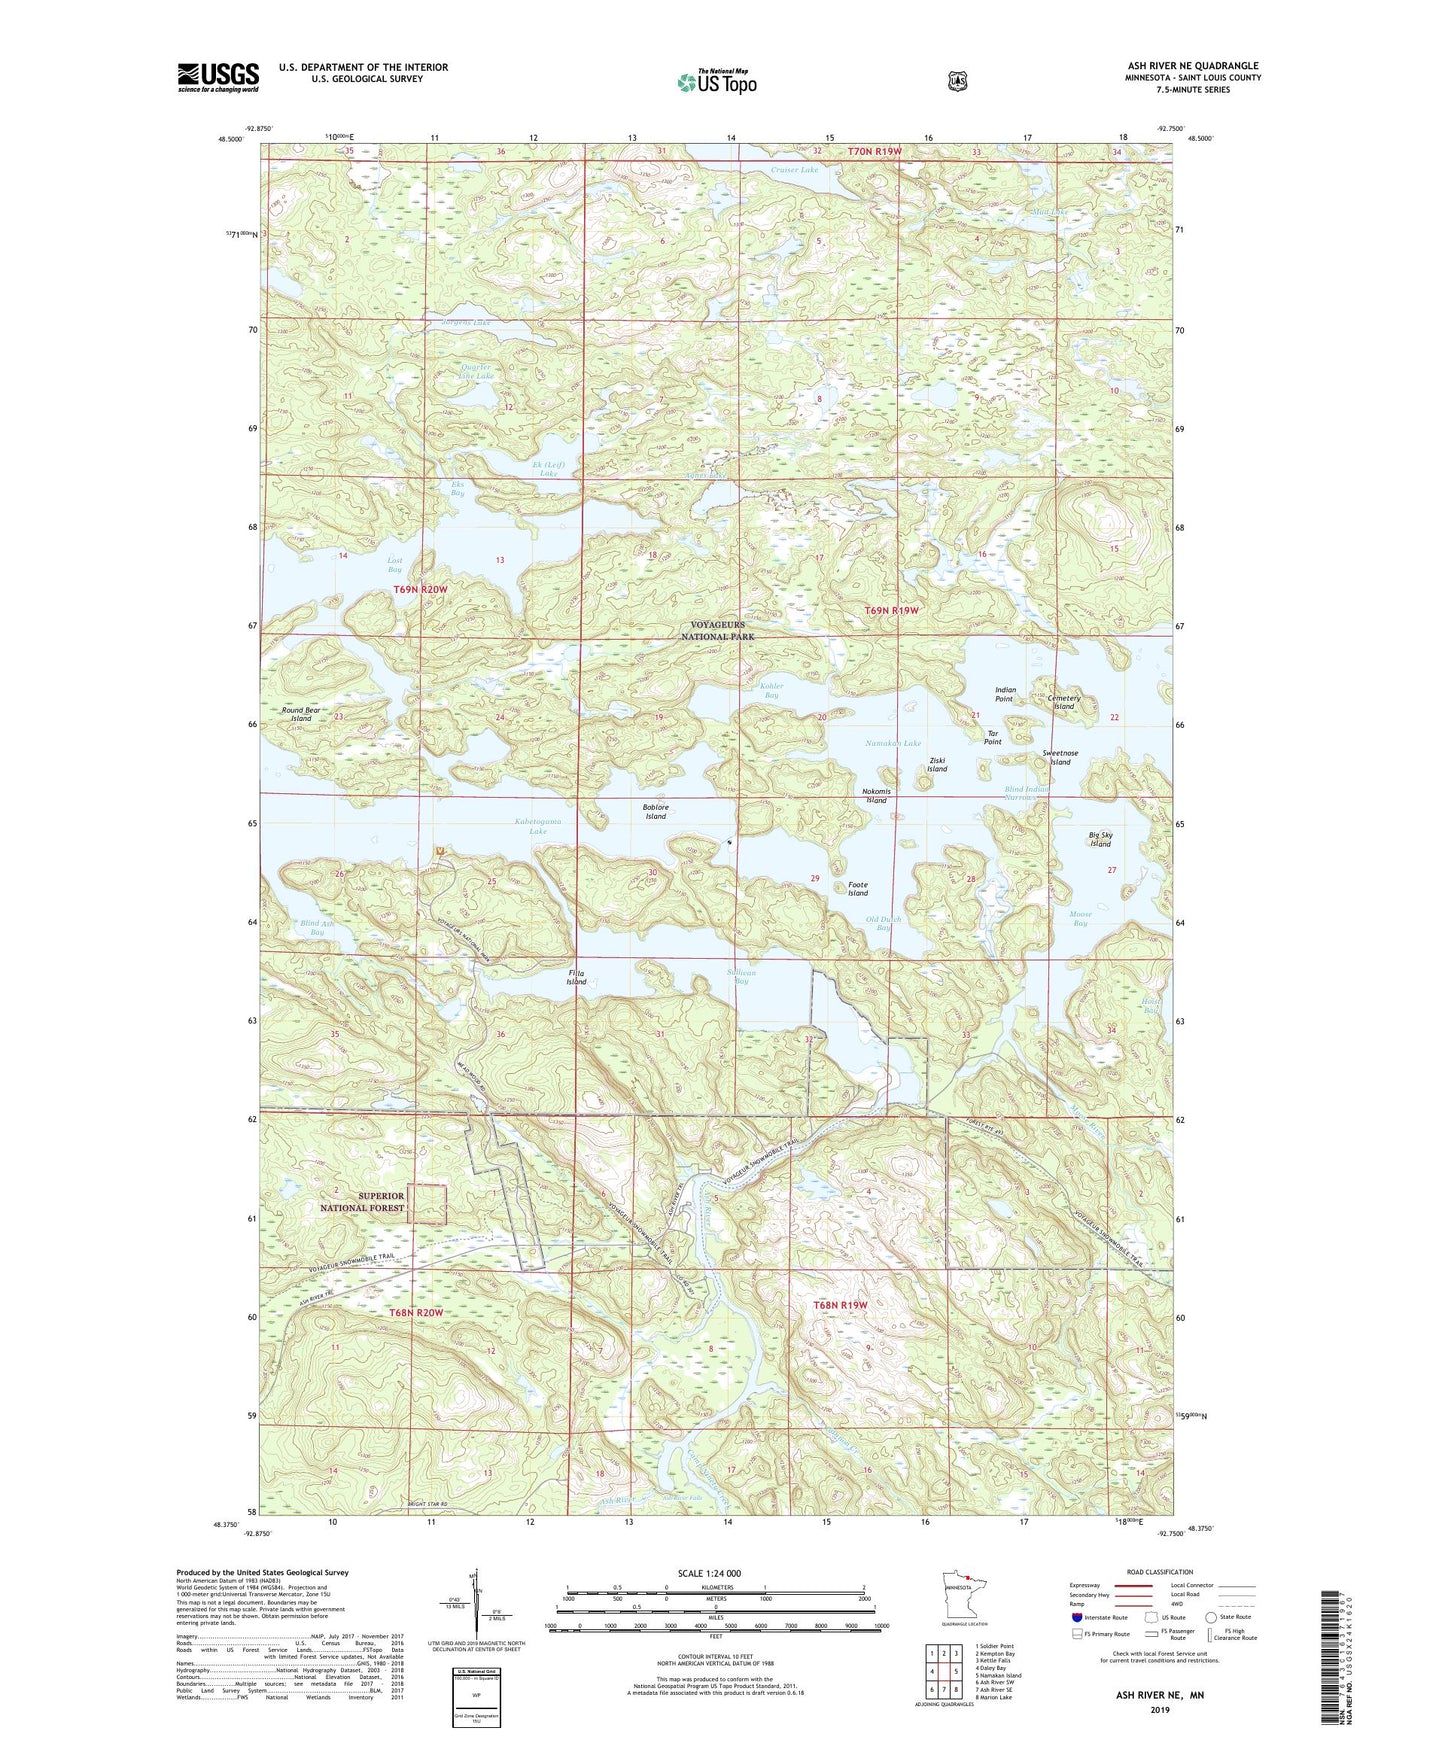 Ash River NE Minnesota US Topo Map Image